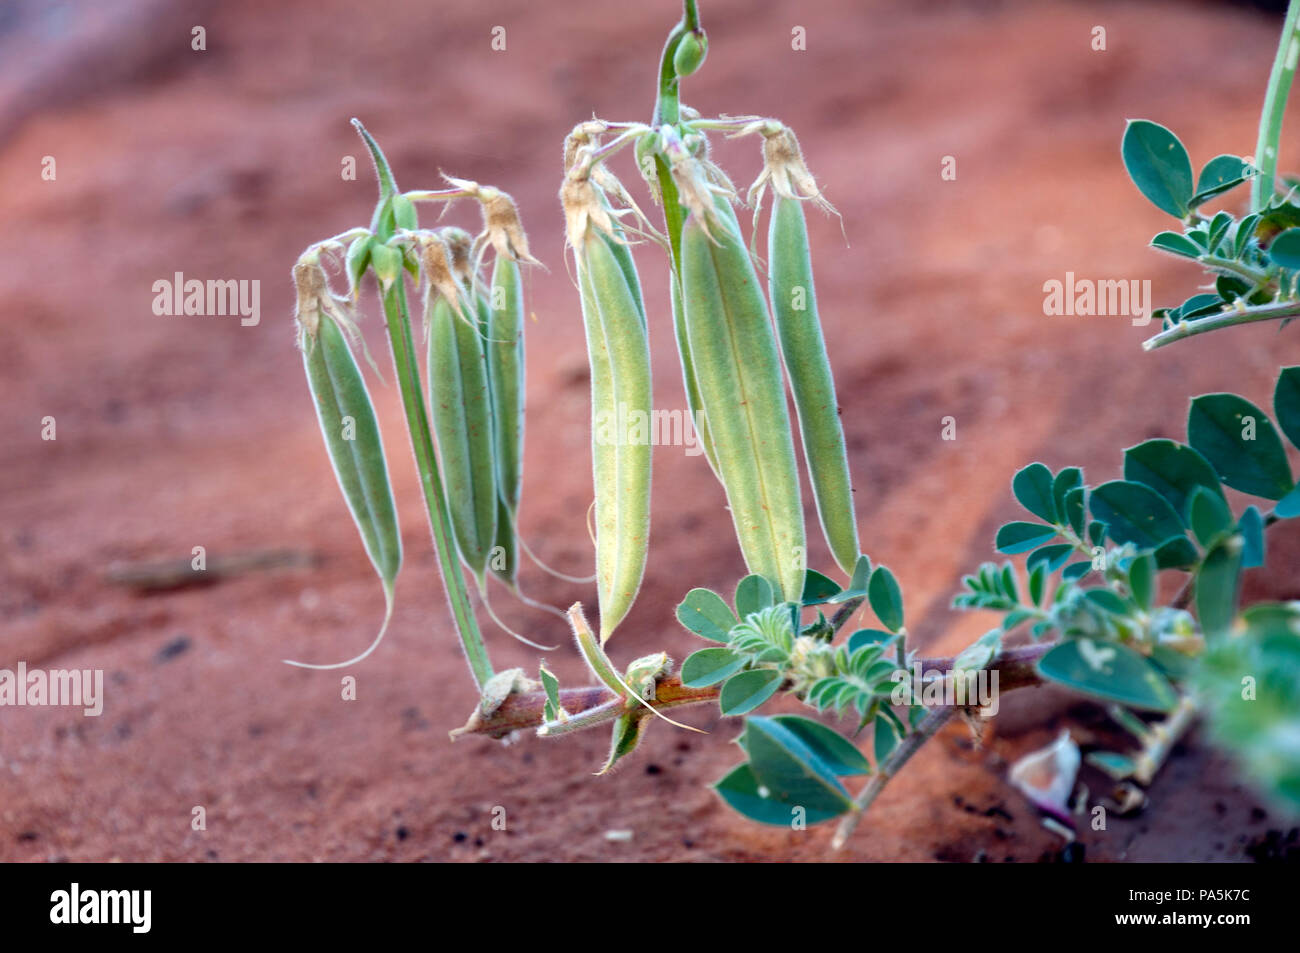 Porto Augusta in Sud Australia, Sturt Desert pianta di piselli con baccelli Foto Stock